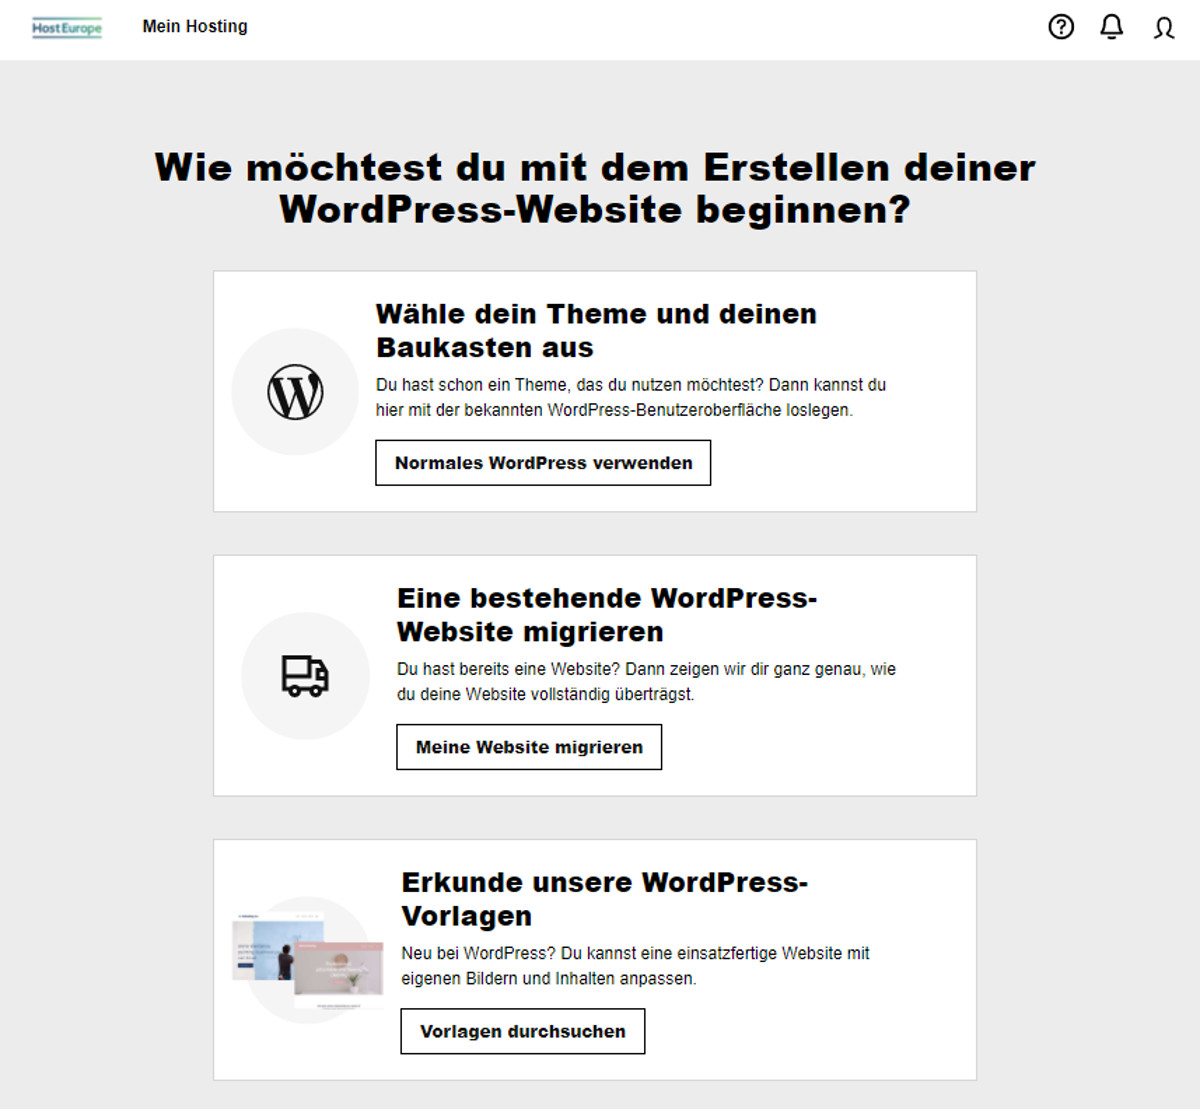 Abbildung: Managed WordPress: 3 Optionen zur Website-Einrichtung